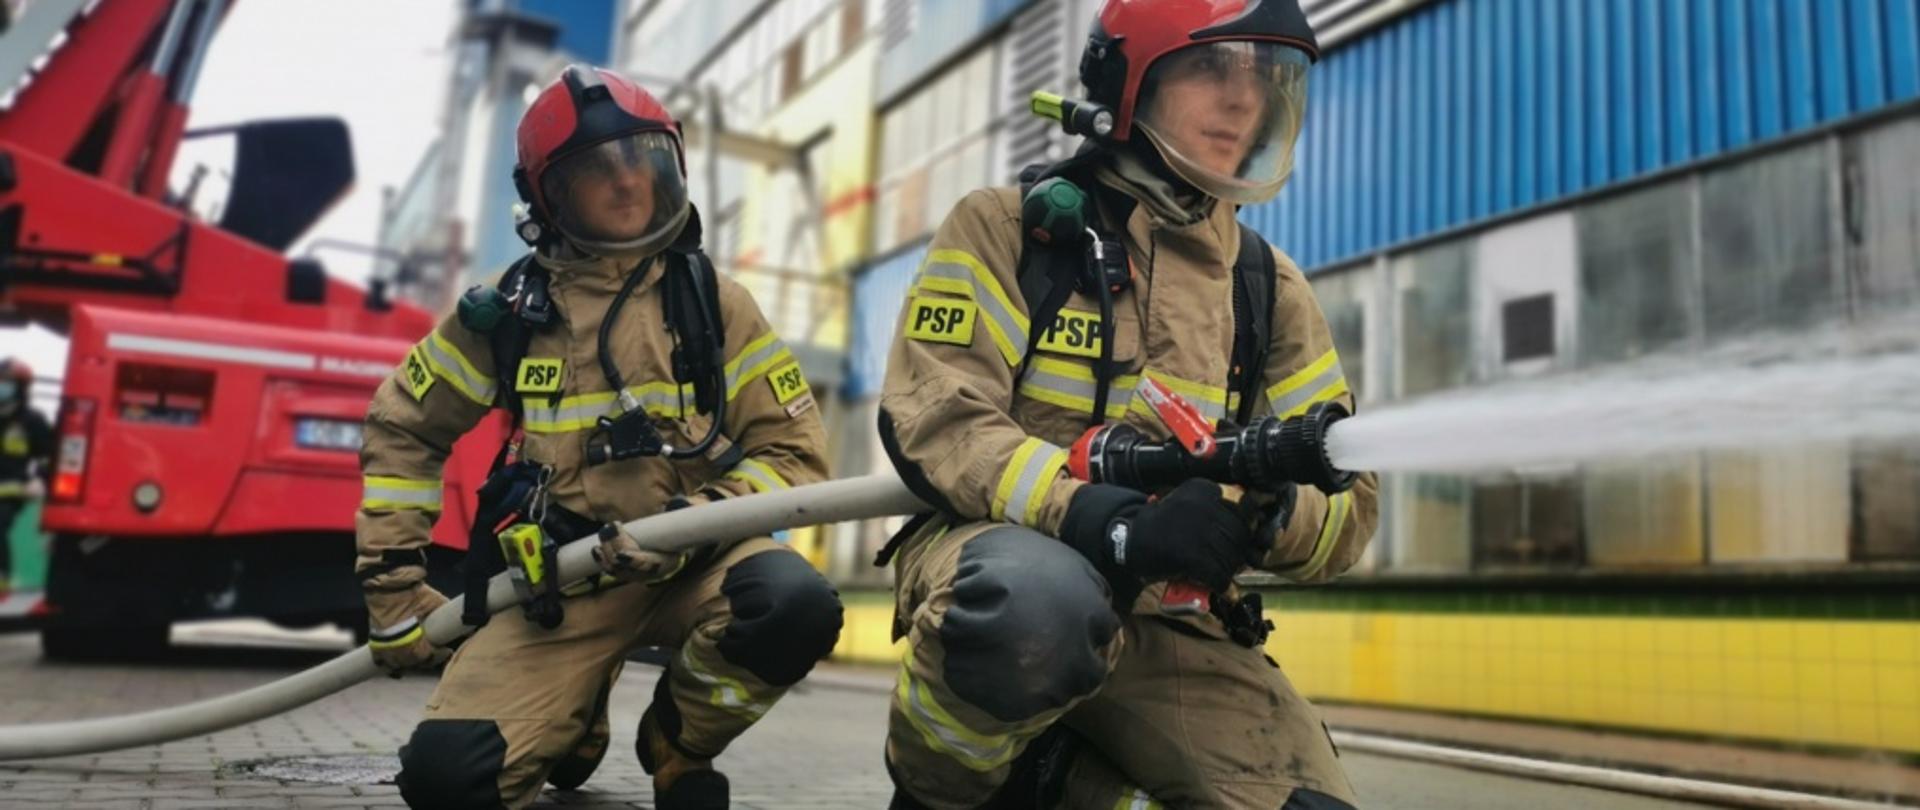 Dwóch strażaków podczas gaszenia pożaru, jeden trzyma prądownicę, drugi podtrzymuje wąż.